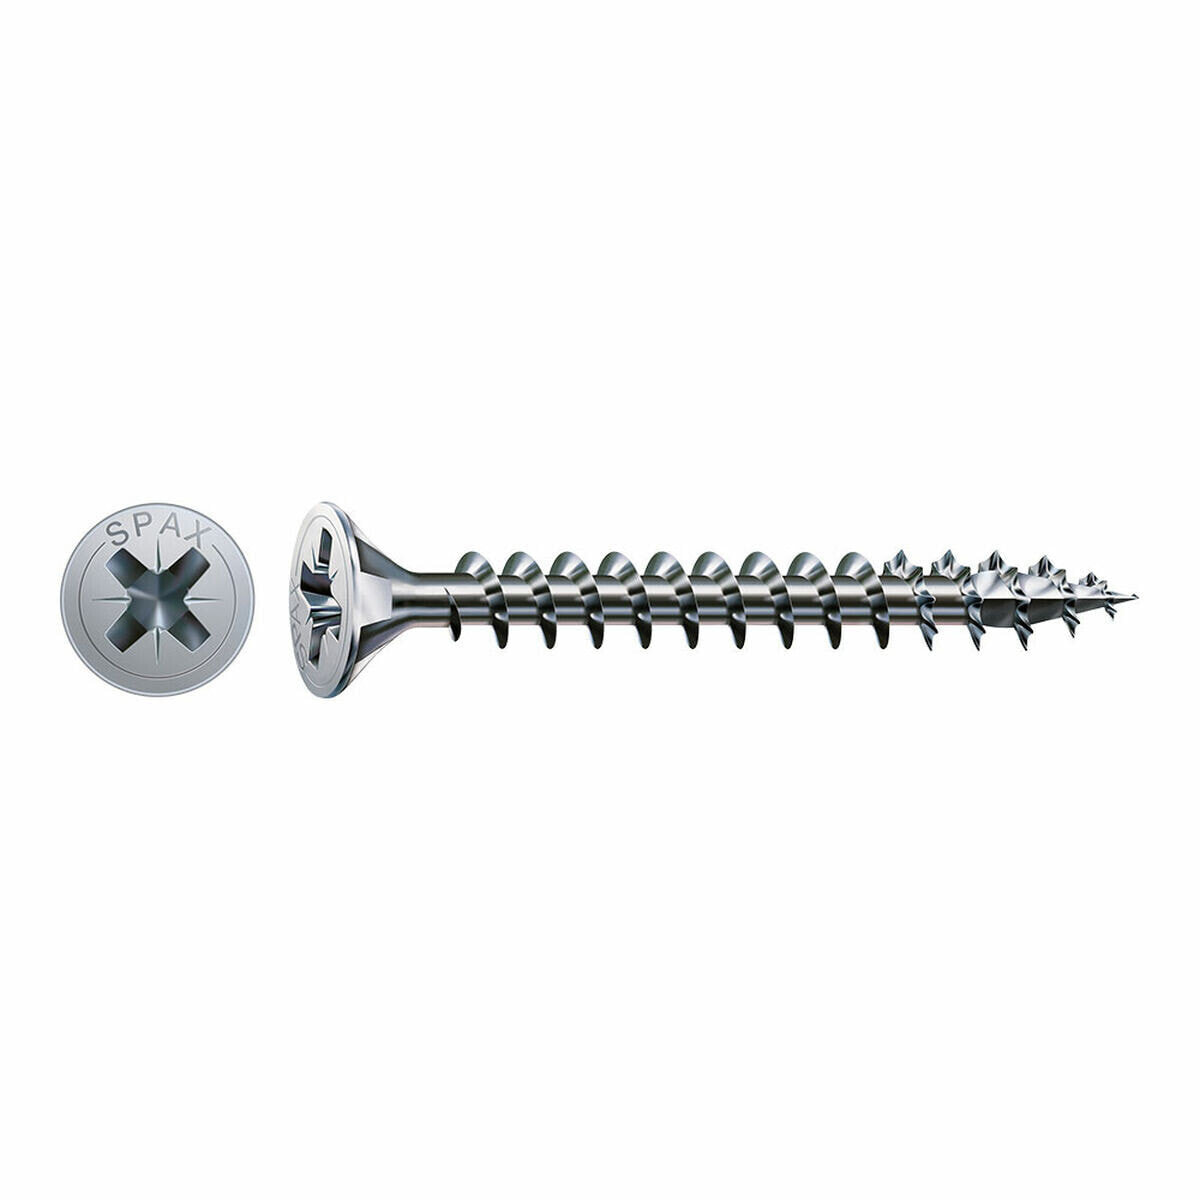 Box of screws SPAX Wood screw Flat head (3 x 20 mm) (3,0 x 20 mm)